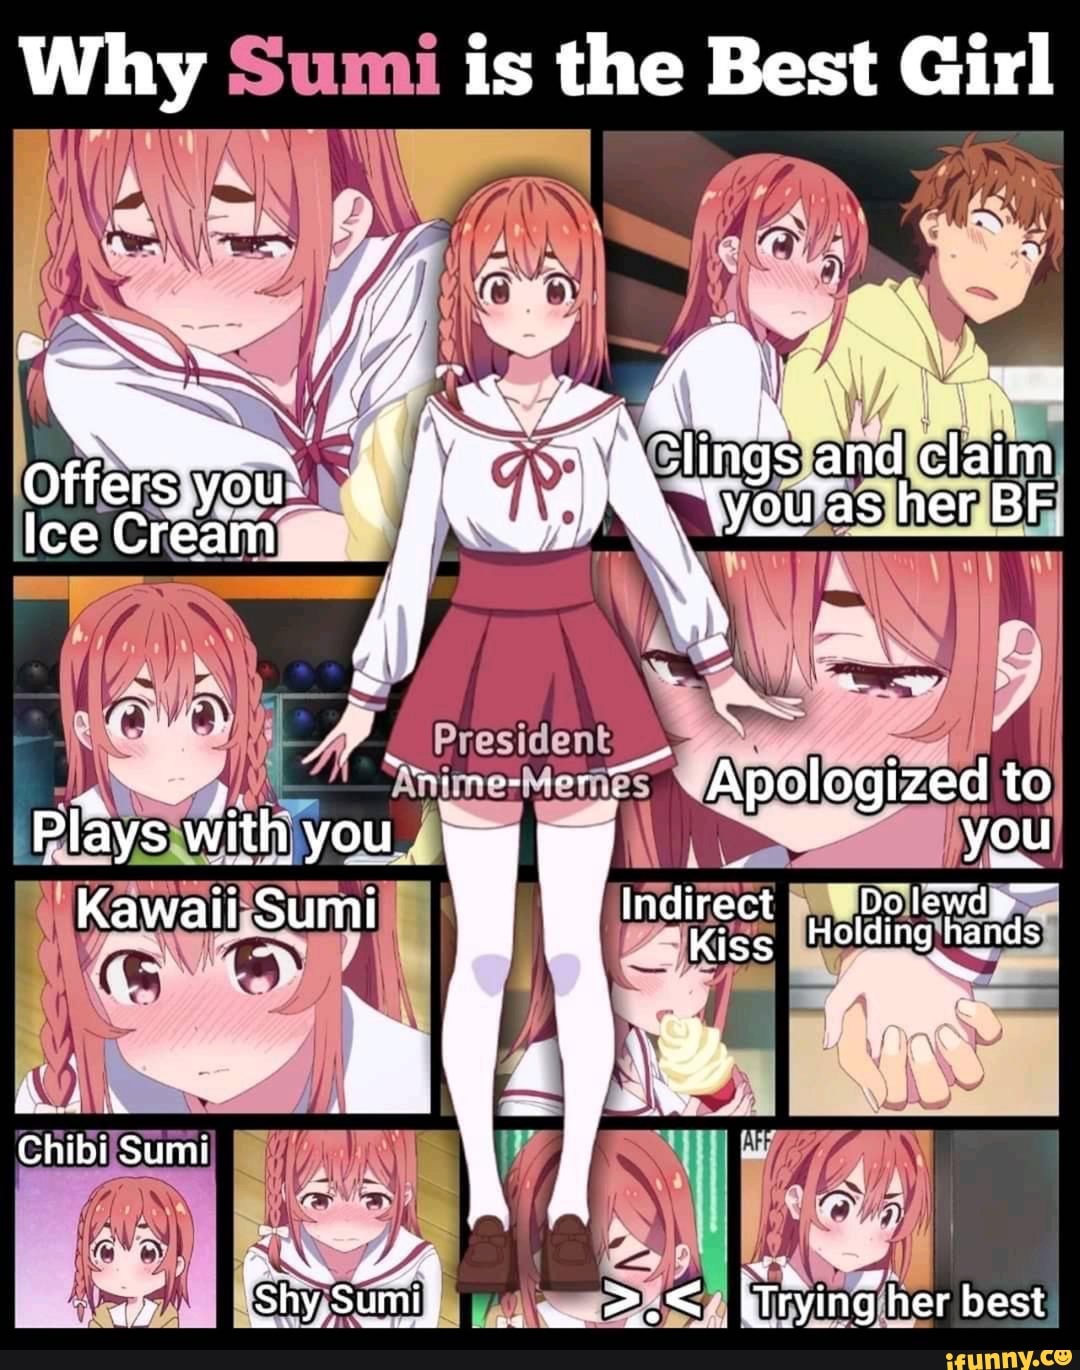 President Anime Memes added a new - President Anime Memes